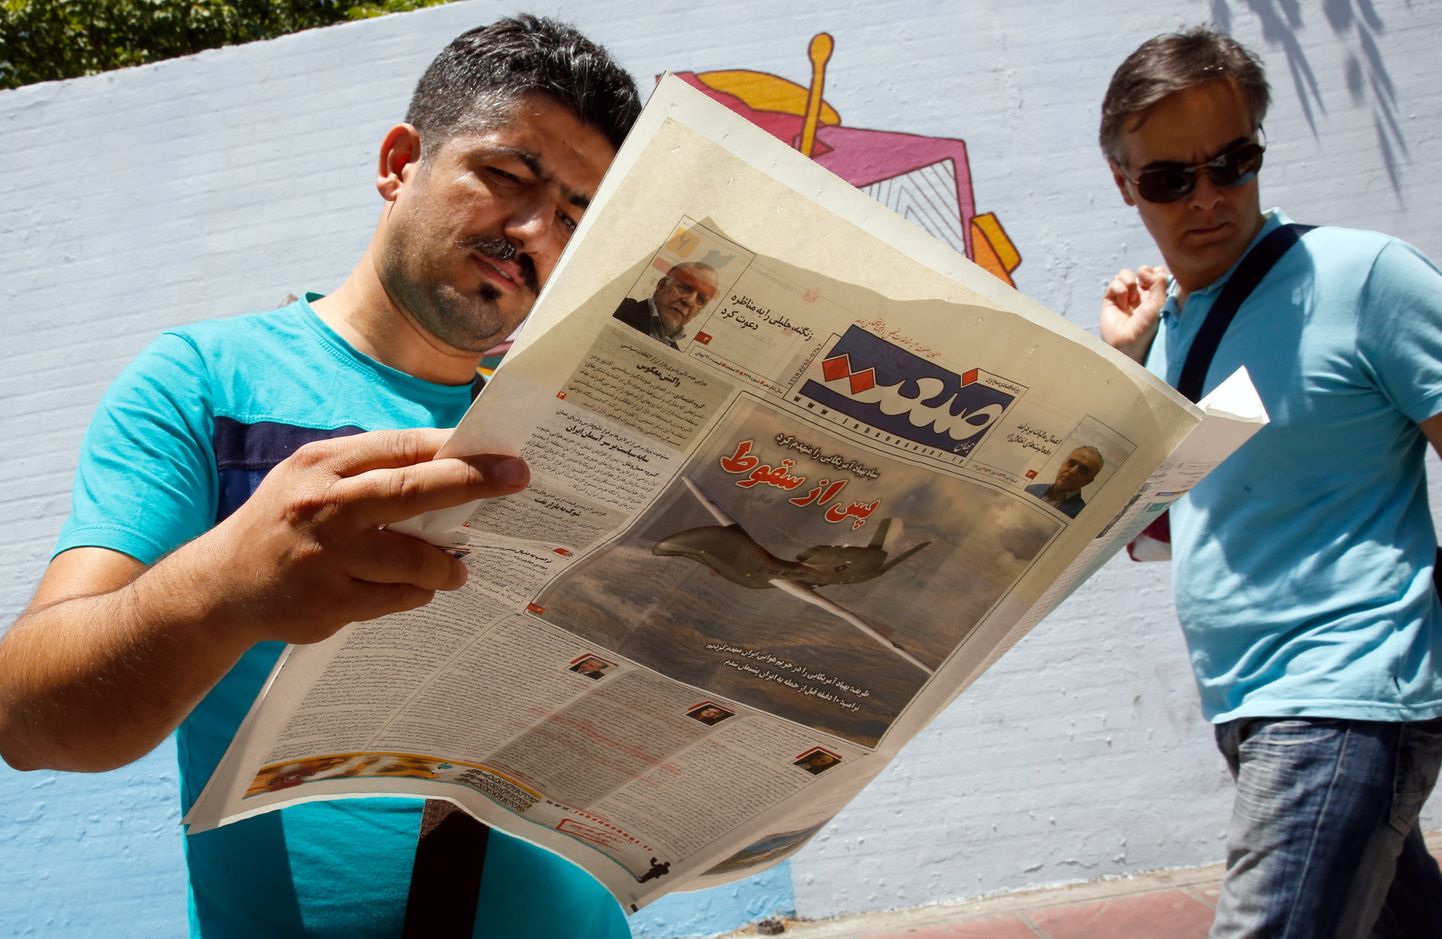 Iraani mees lugemas päevalehte Sanaat, kus kirjutatakse USA drooni allatulistamisest. Esilehel on pilt USA droonist ja pealkiri "Pärast allakukkumist".